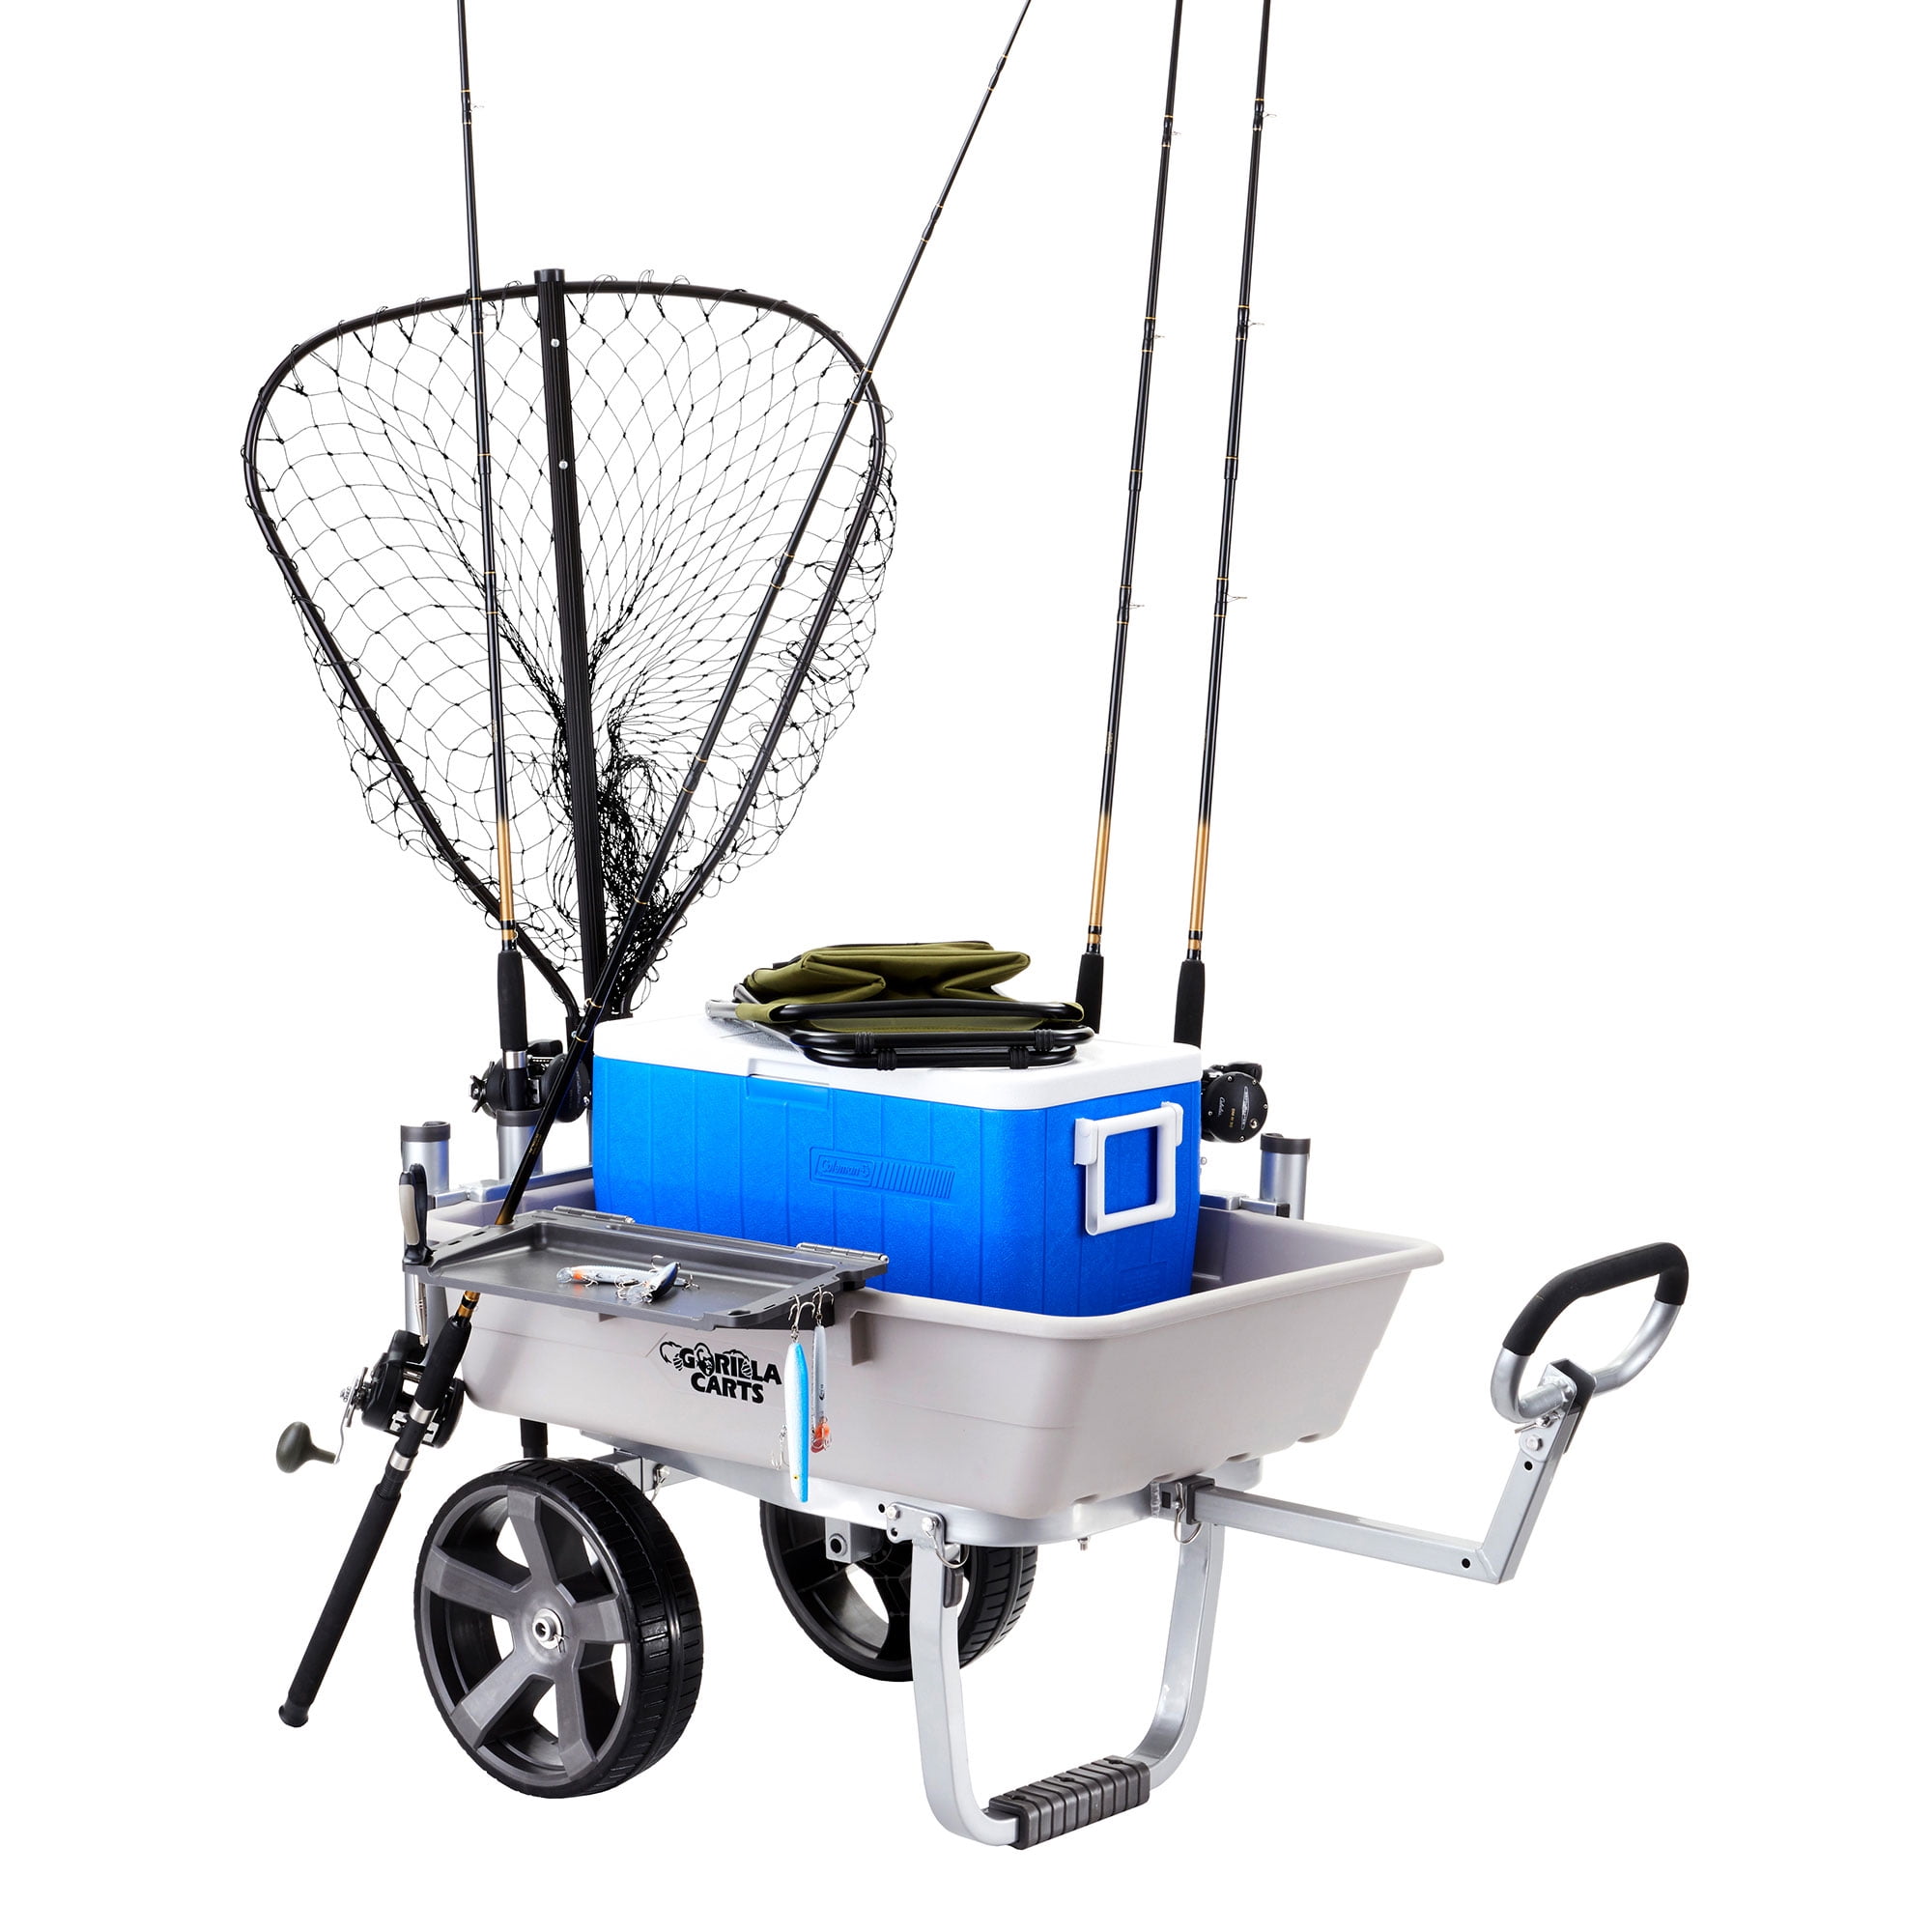 Gorilla Carts 200 Pound Capacity Heavy Duty Poly Fish & Marine Utility Cart